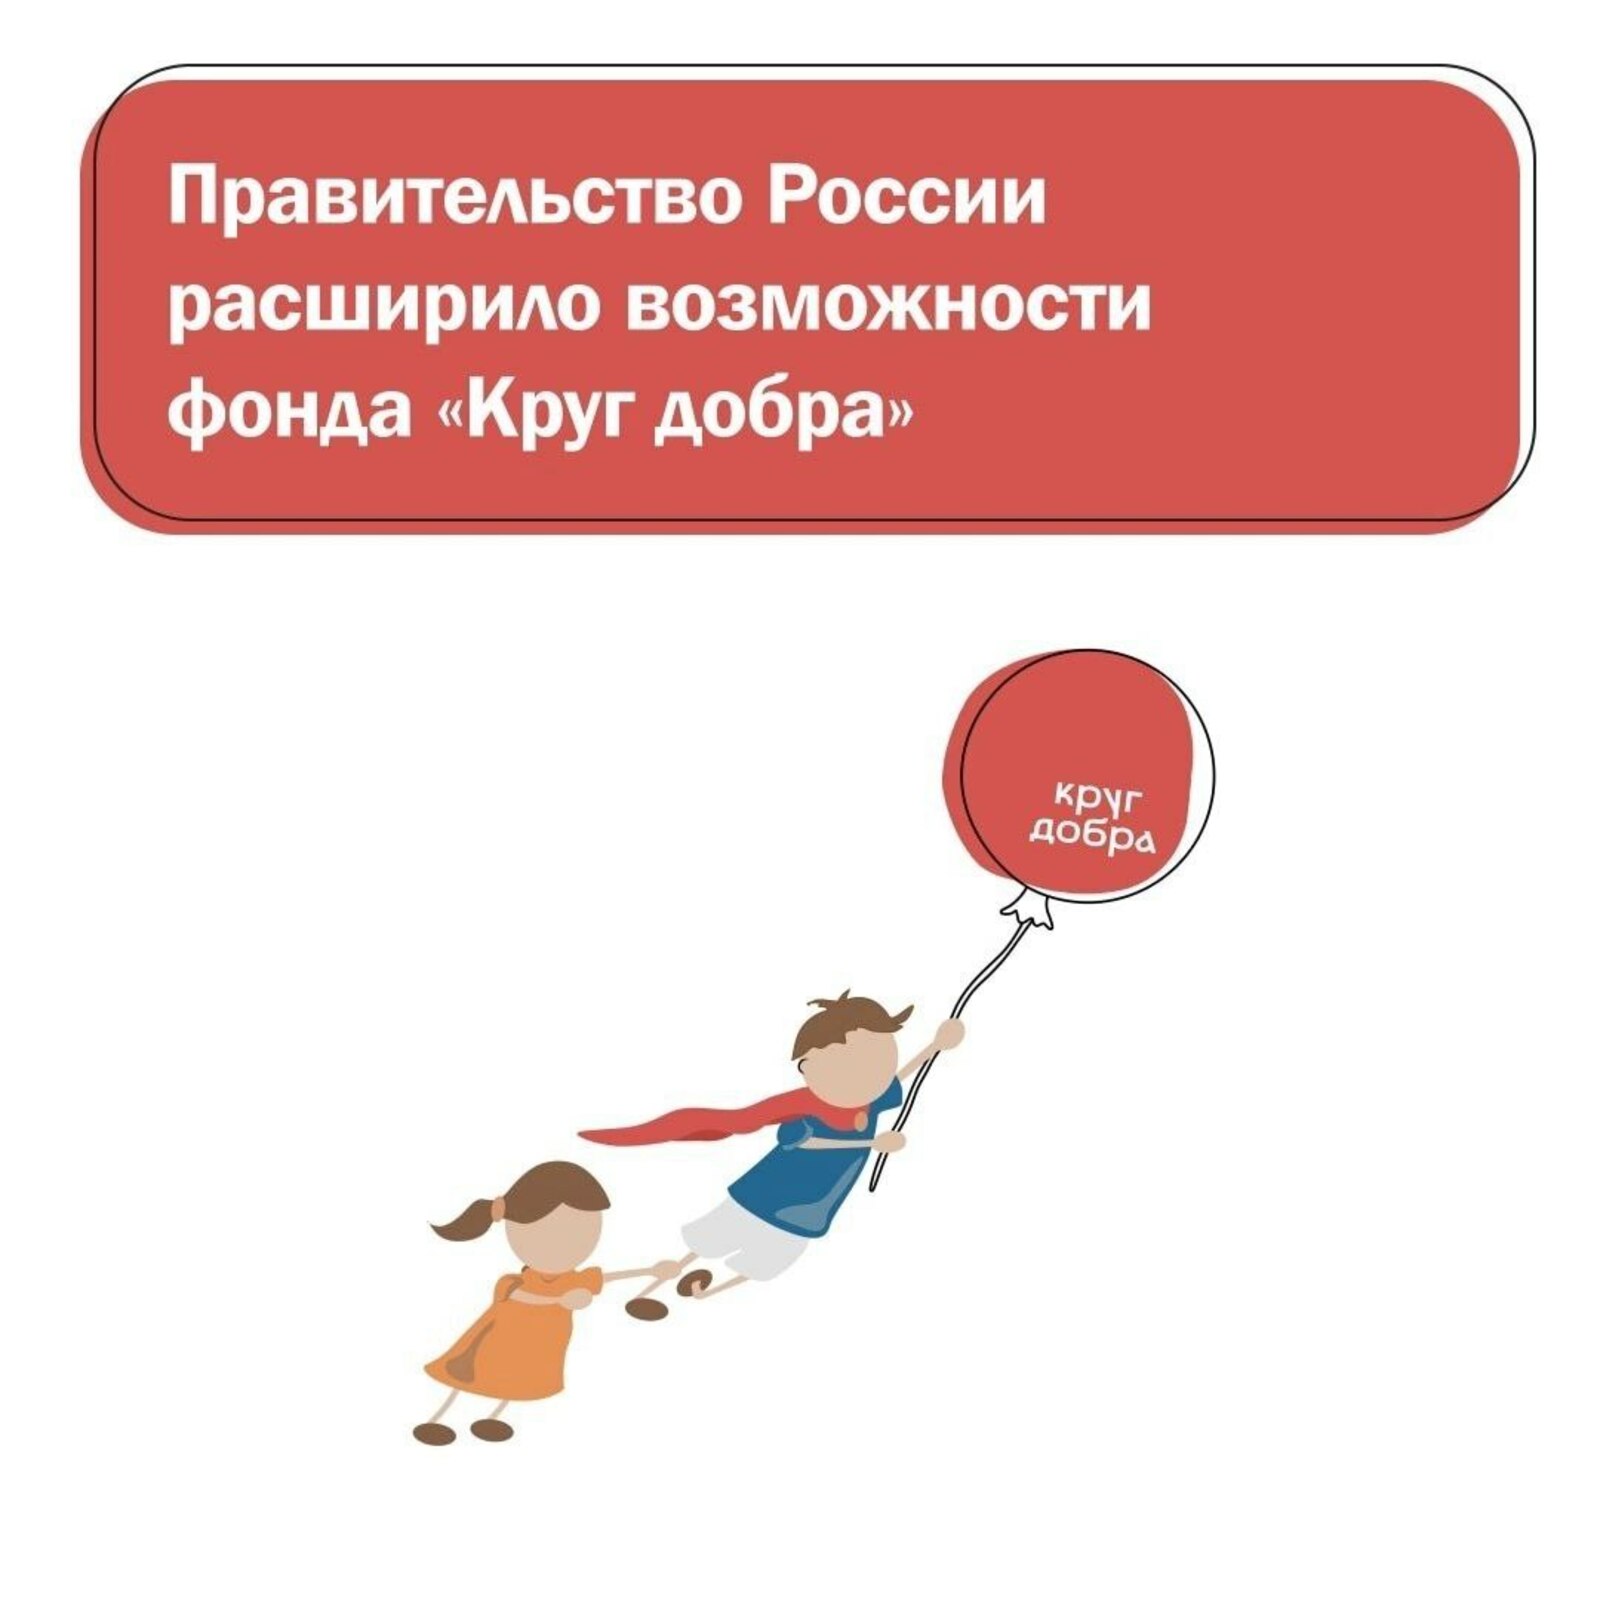 168 детей из Башкортостана с 2021 года получили помощь благотворительного фонда «Круг добра».